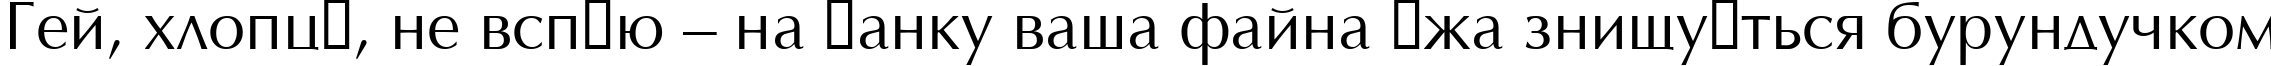 Пример написания шрифтом Optimal текста на украинском